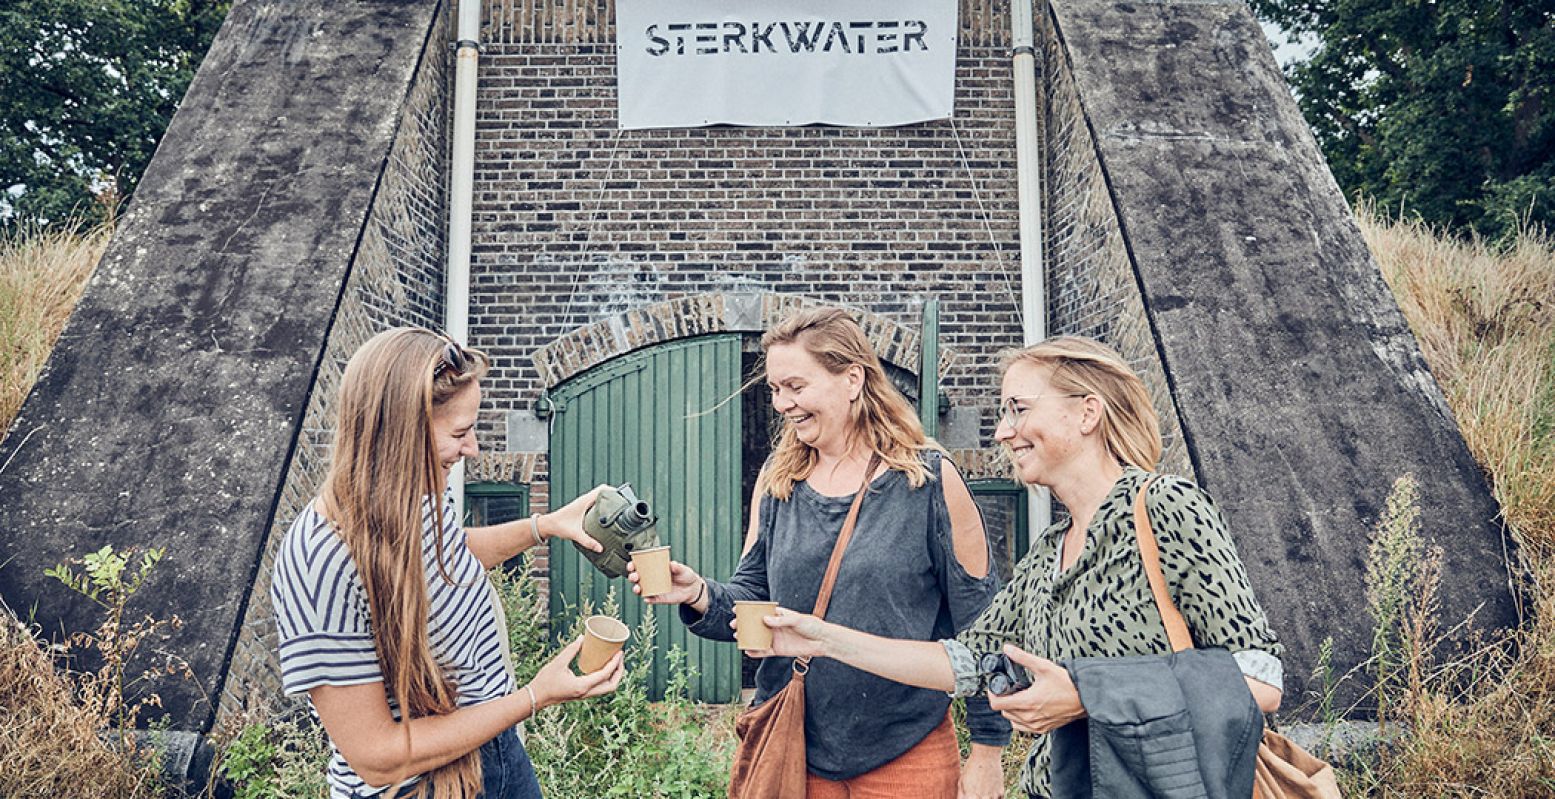 Pop-up restaurant SterkWater verzorgt een vijfgangendiner met muziek en verhalen om te vieren dat de Nieuwe Hollandse Waterlinie ook is erkend als werelderfgoed. Foto: Fortenfestival © De Maaltuin